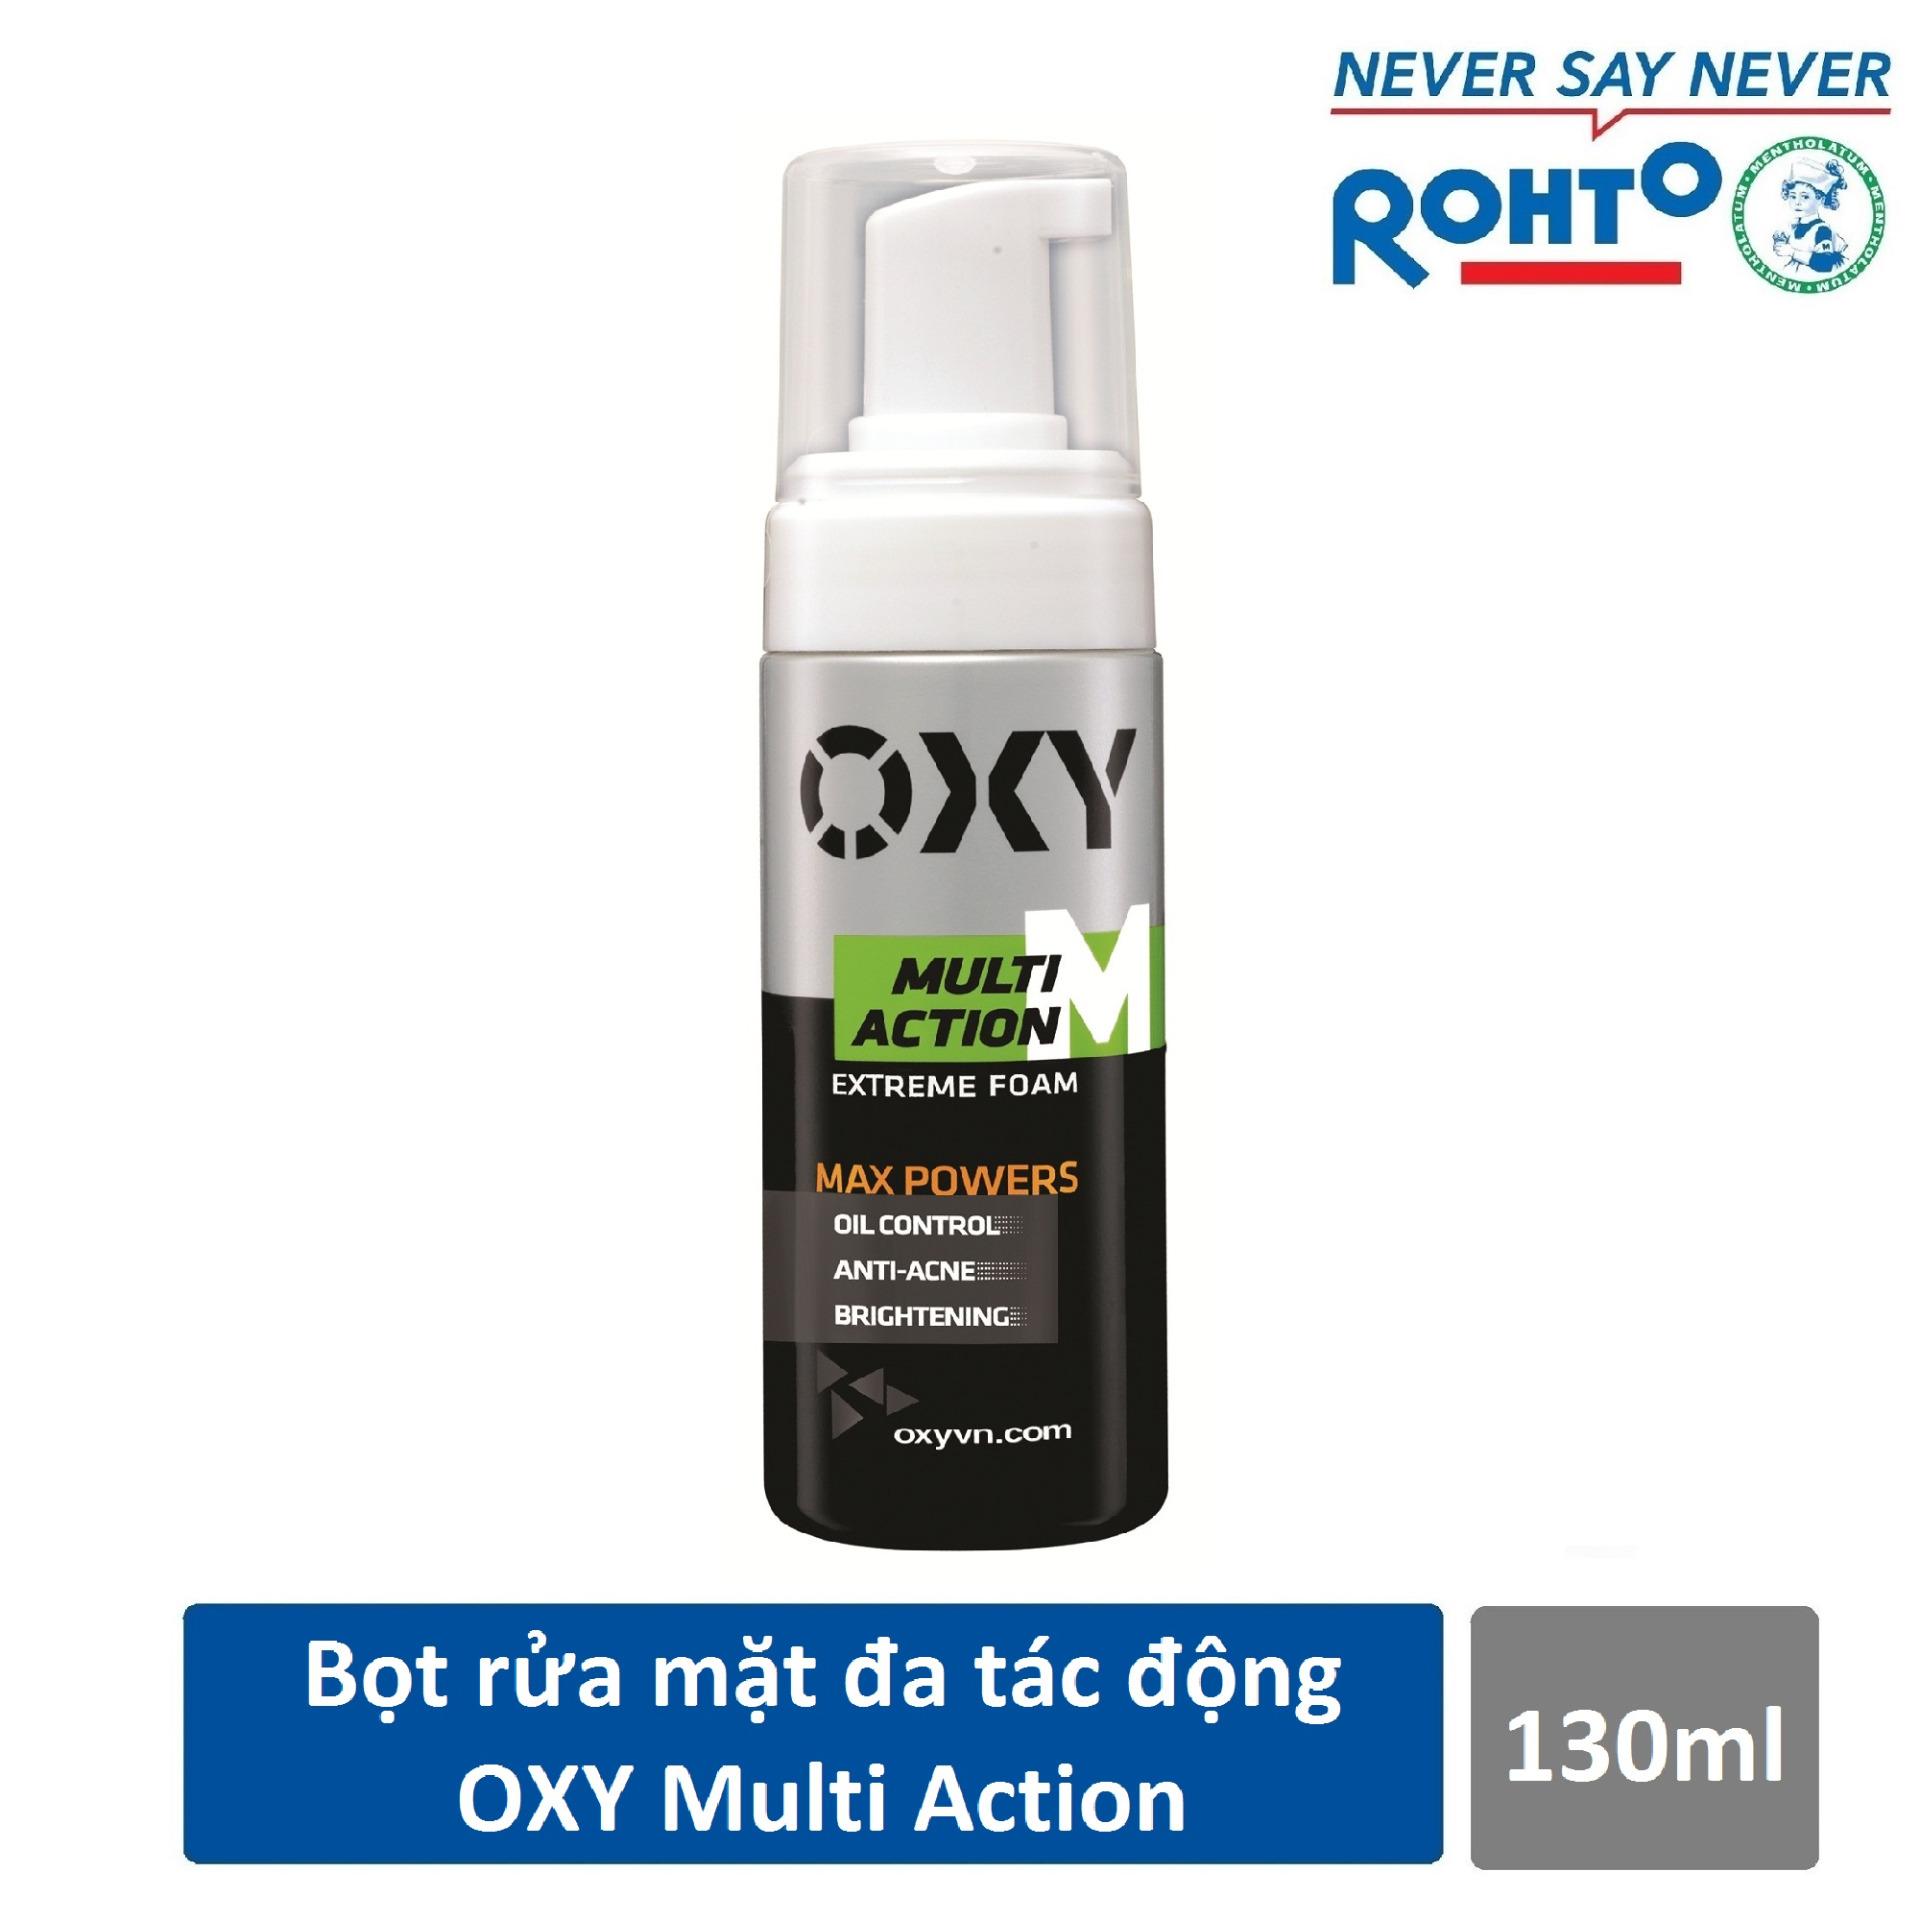 Bọt rửa mặt đa tác động dành cho Nam Oxy Multi Action 130ml